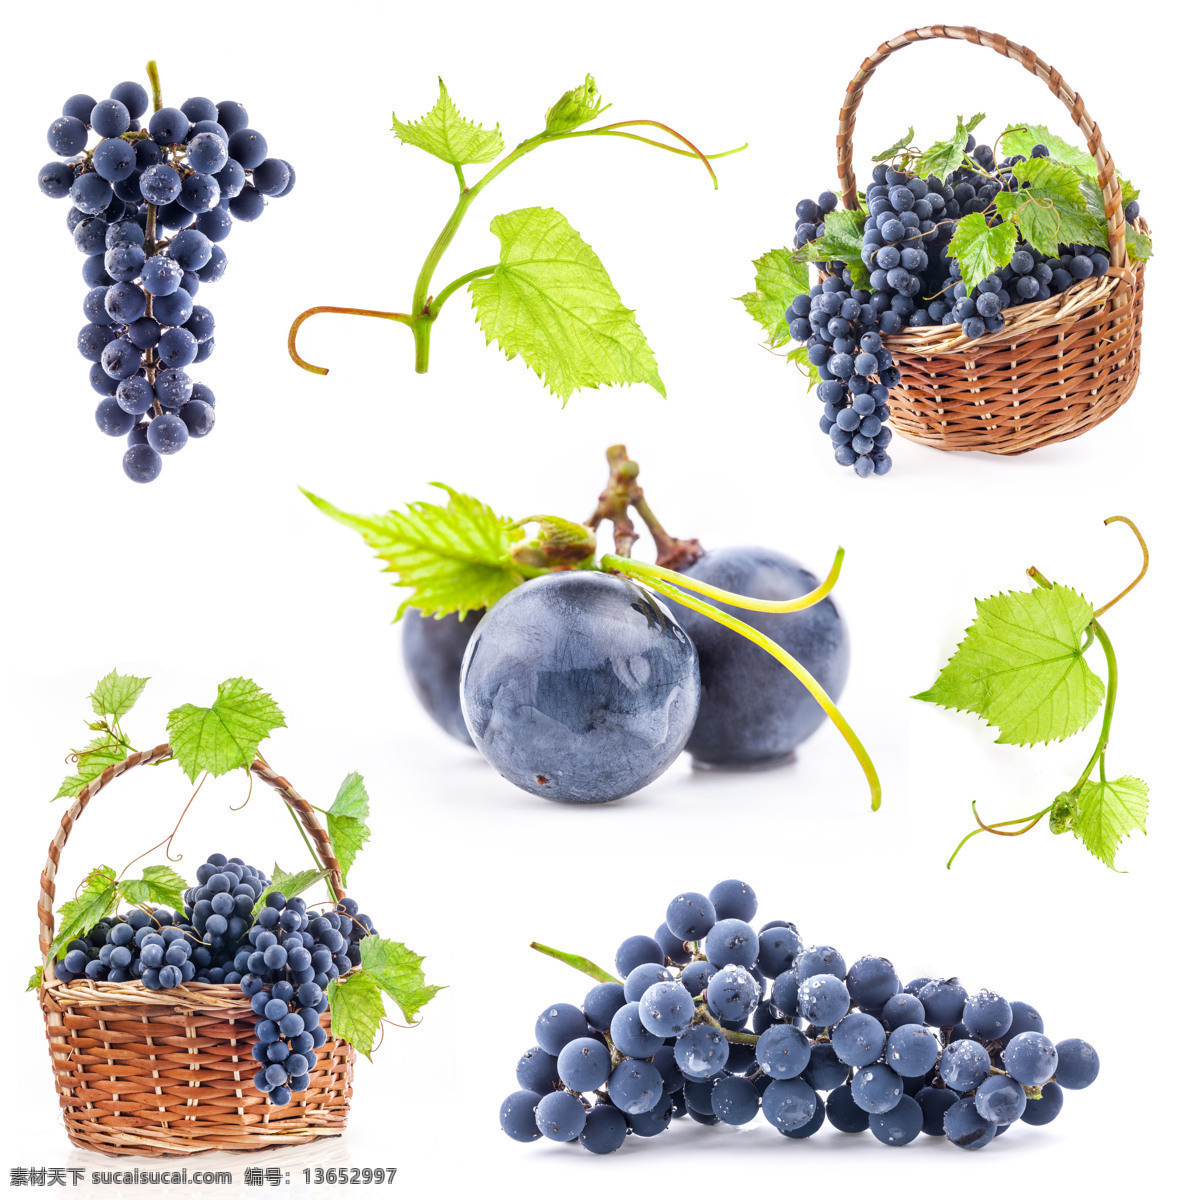 新鲜葡萄水果 新鲜水果 葡萄 新鲜葡萄 红酒 葡萄叶 提子 水果 水果蔬菜 餐饮美食 白色